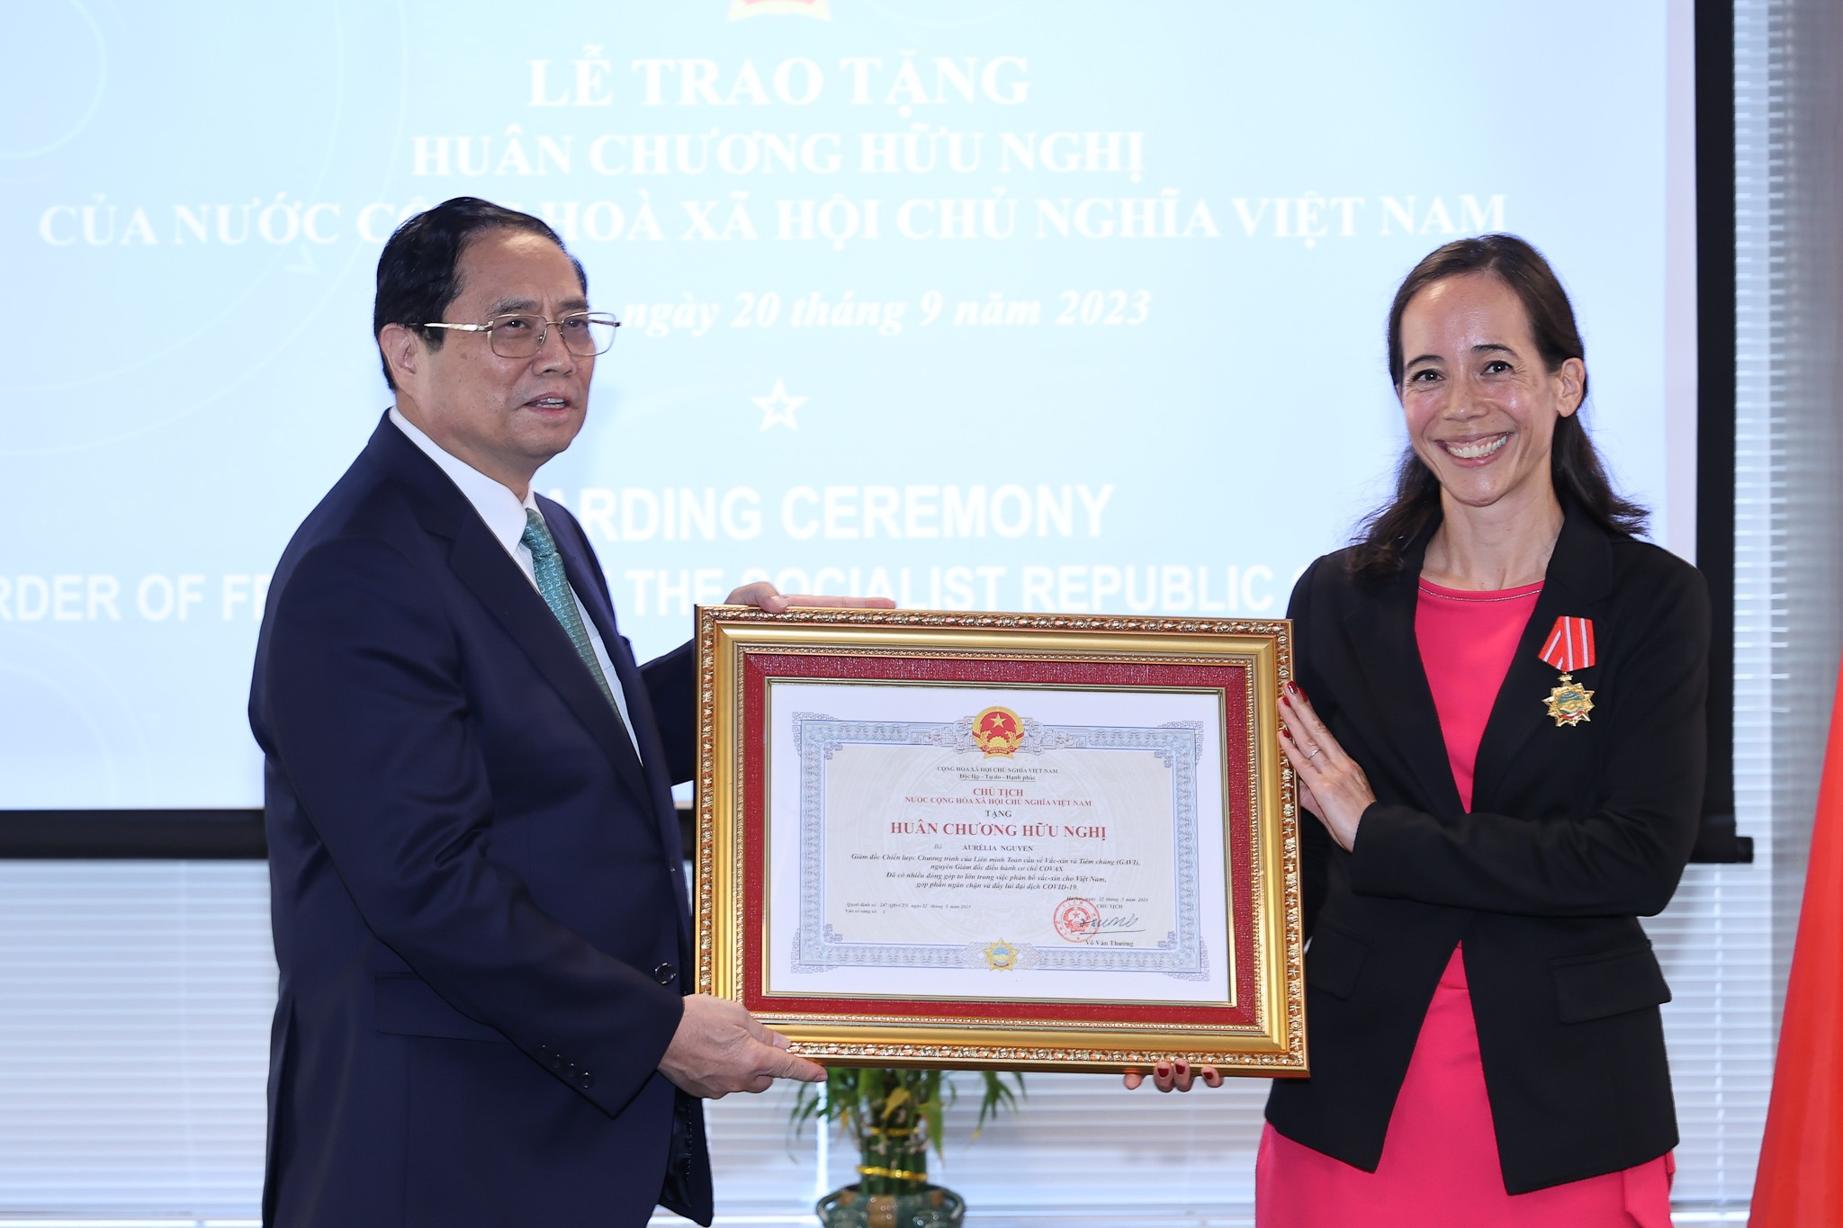 Thủ tướng trao Huân chương Hữu nghị cho bà Aurélia Nguyễn